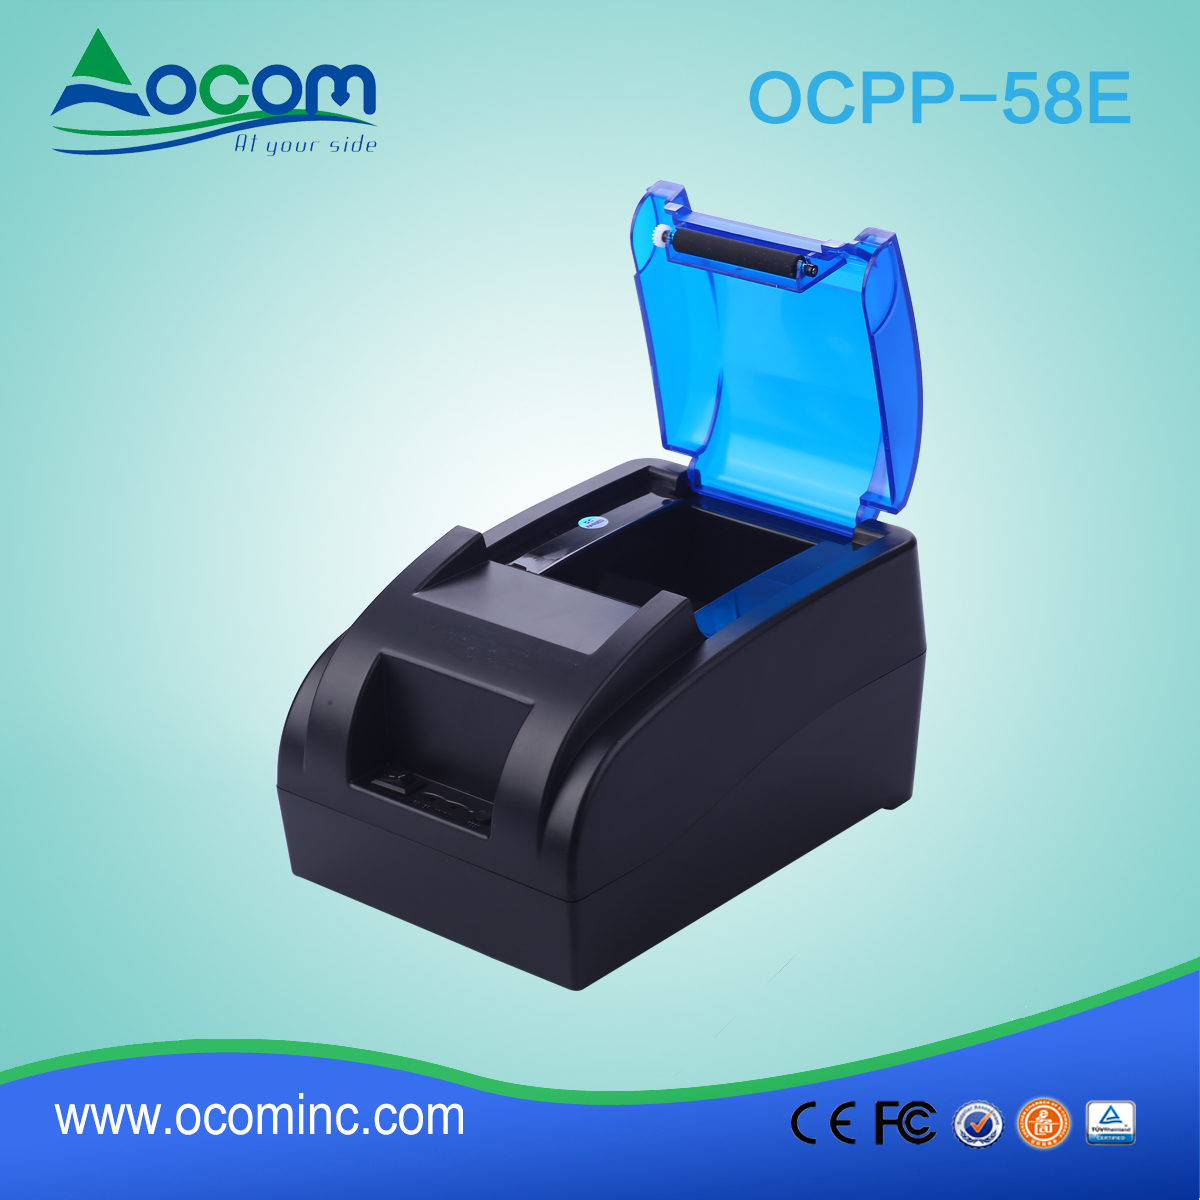 58毫米热敏收据打印机内置电源适配器ocpp-58E-W WIFI端口